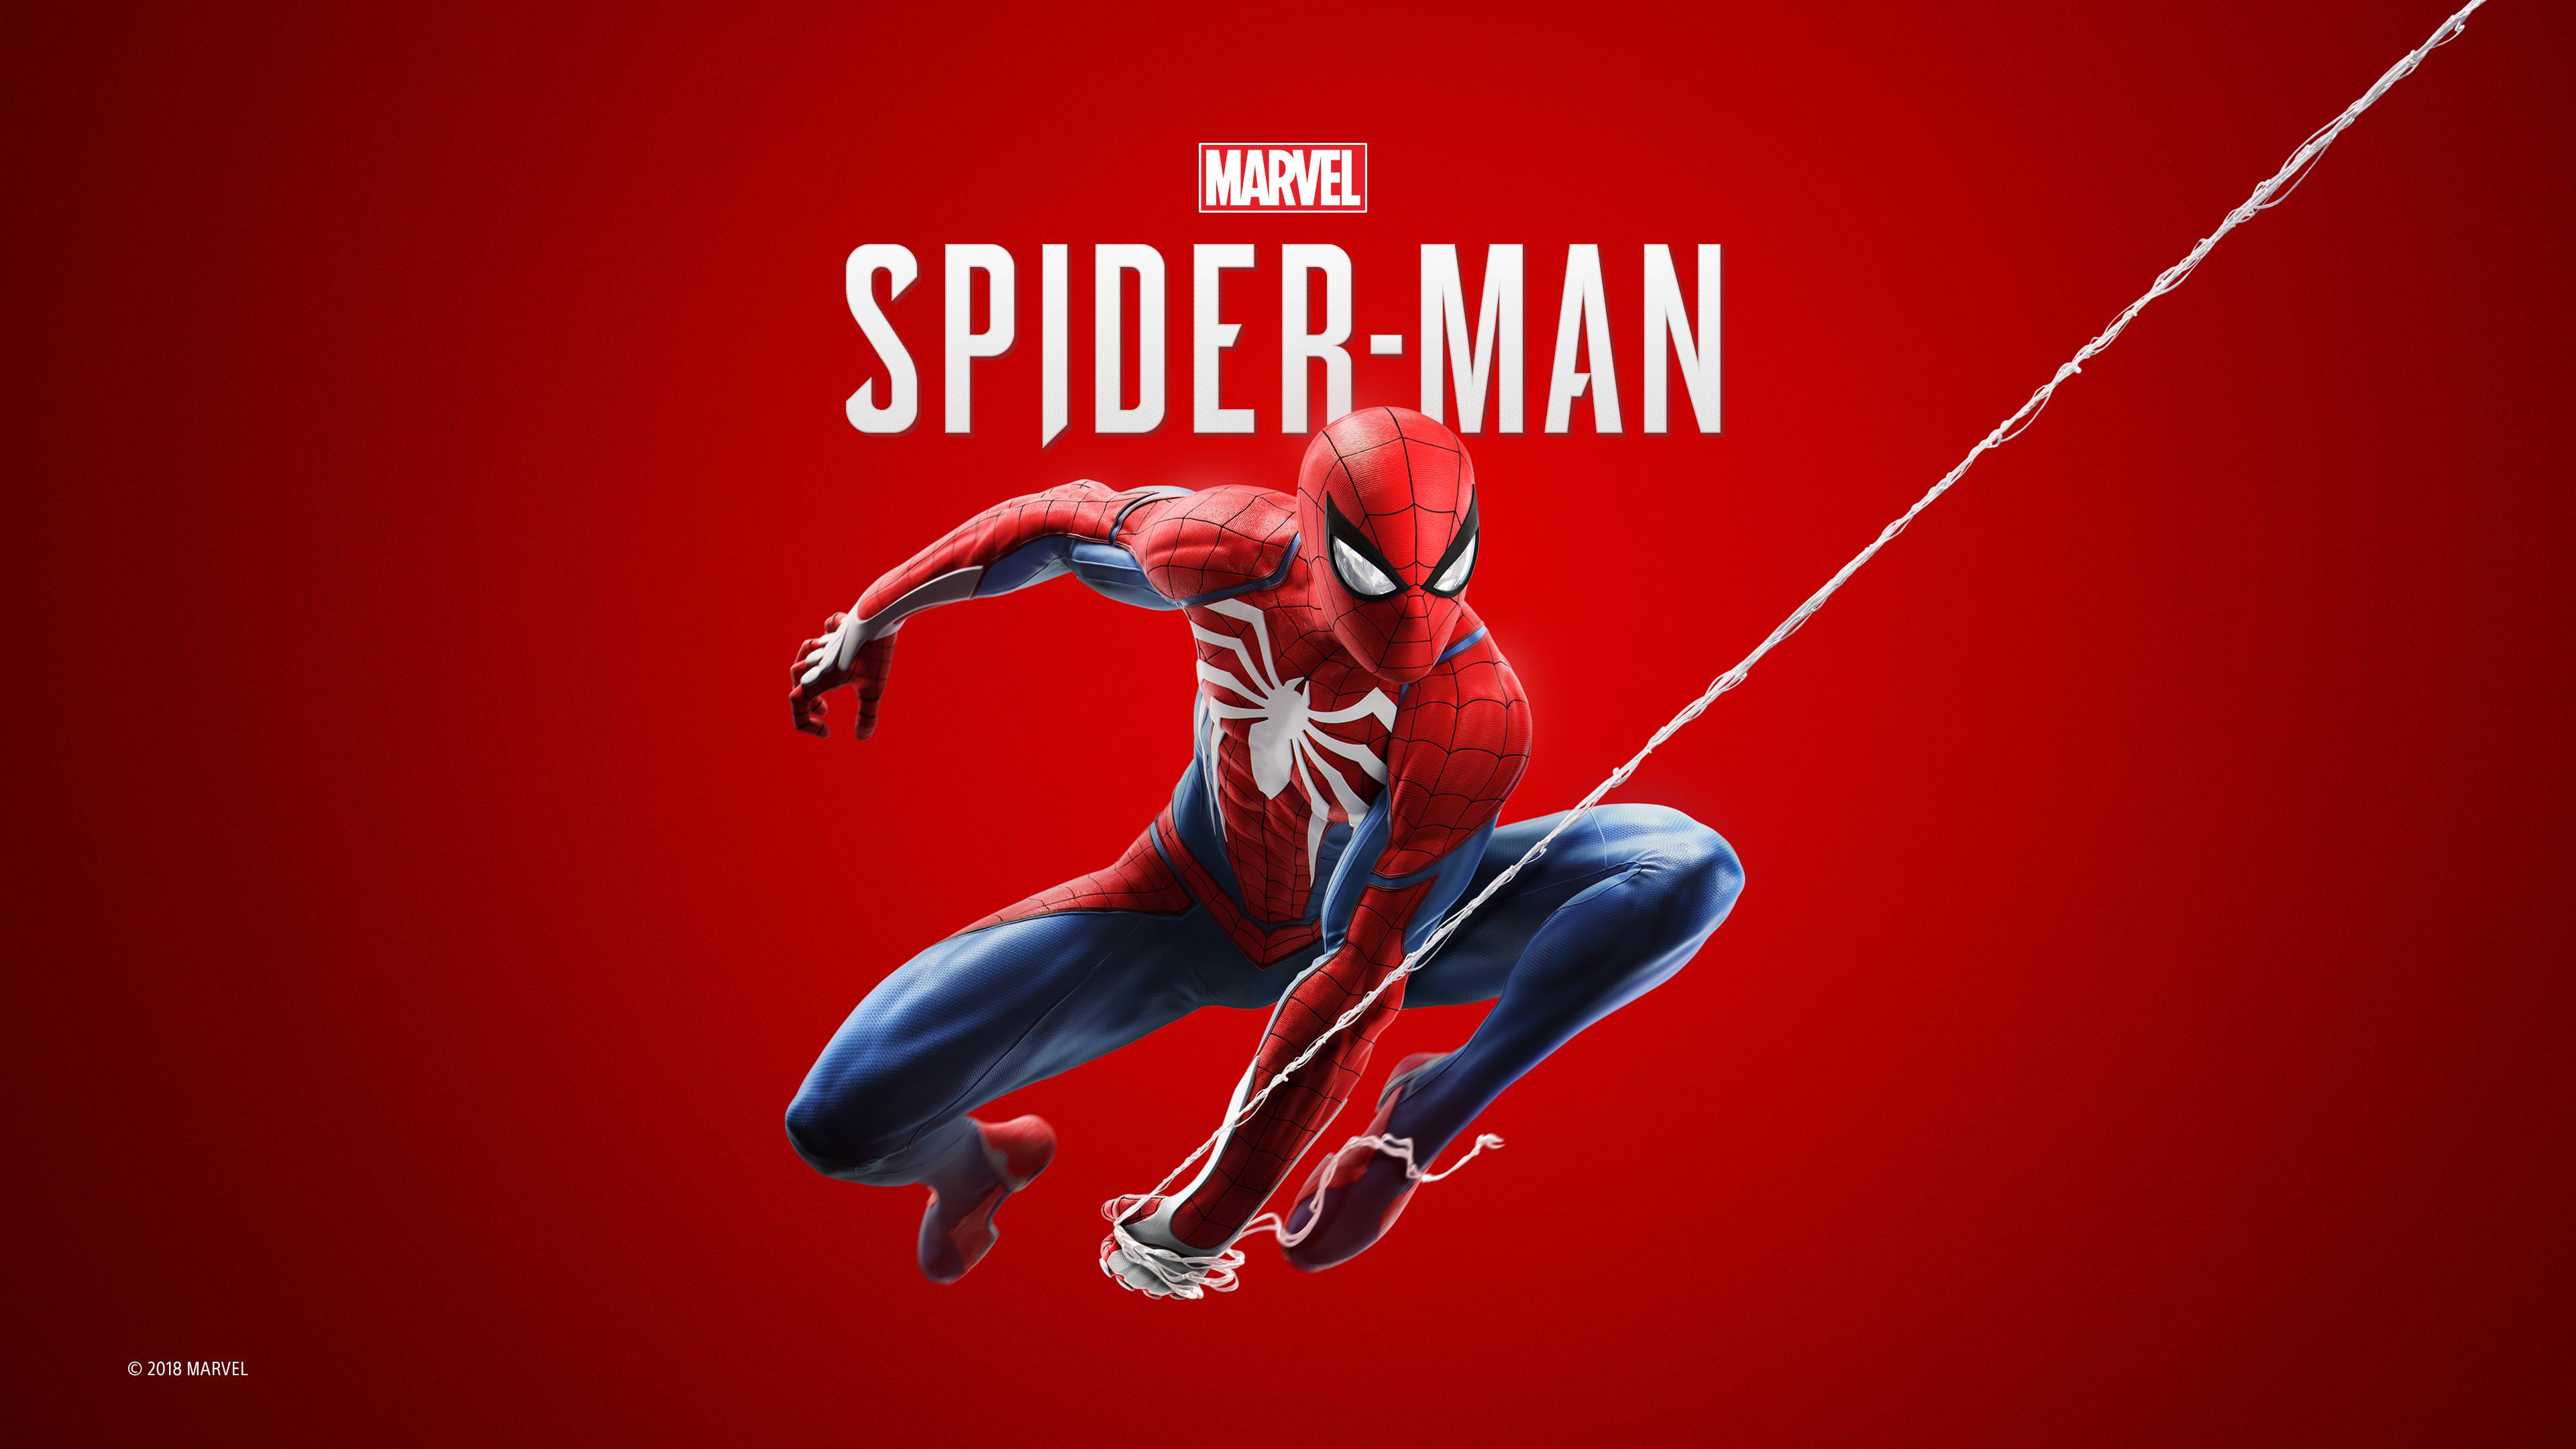 Nâng cao trải nghiệm tuyệt vời của bạn với hình nền Spiderman 4K. Tận hưởng độ nét cao và màu sắc sáng tạo, tạo nên một trải nghiệm tuyệt vời cho màn hình điện thoại của bạn. Click vào đây để xem chi tiết.